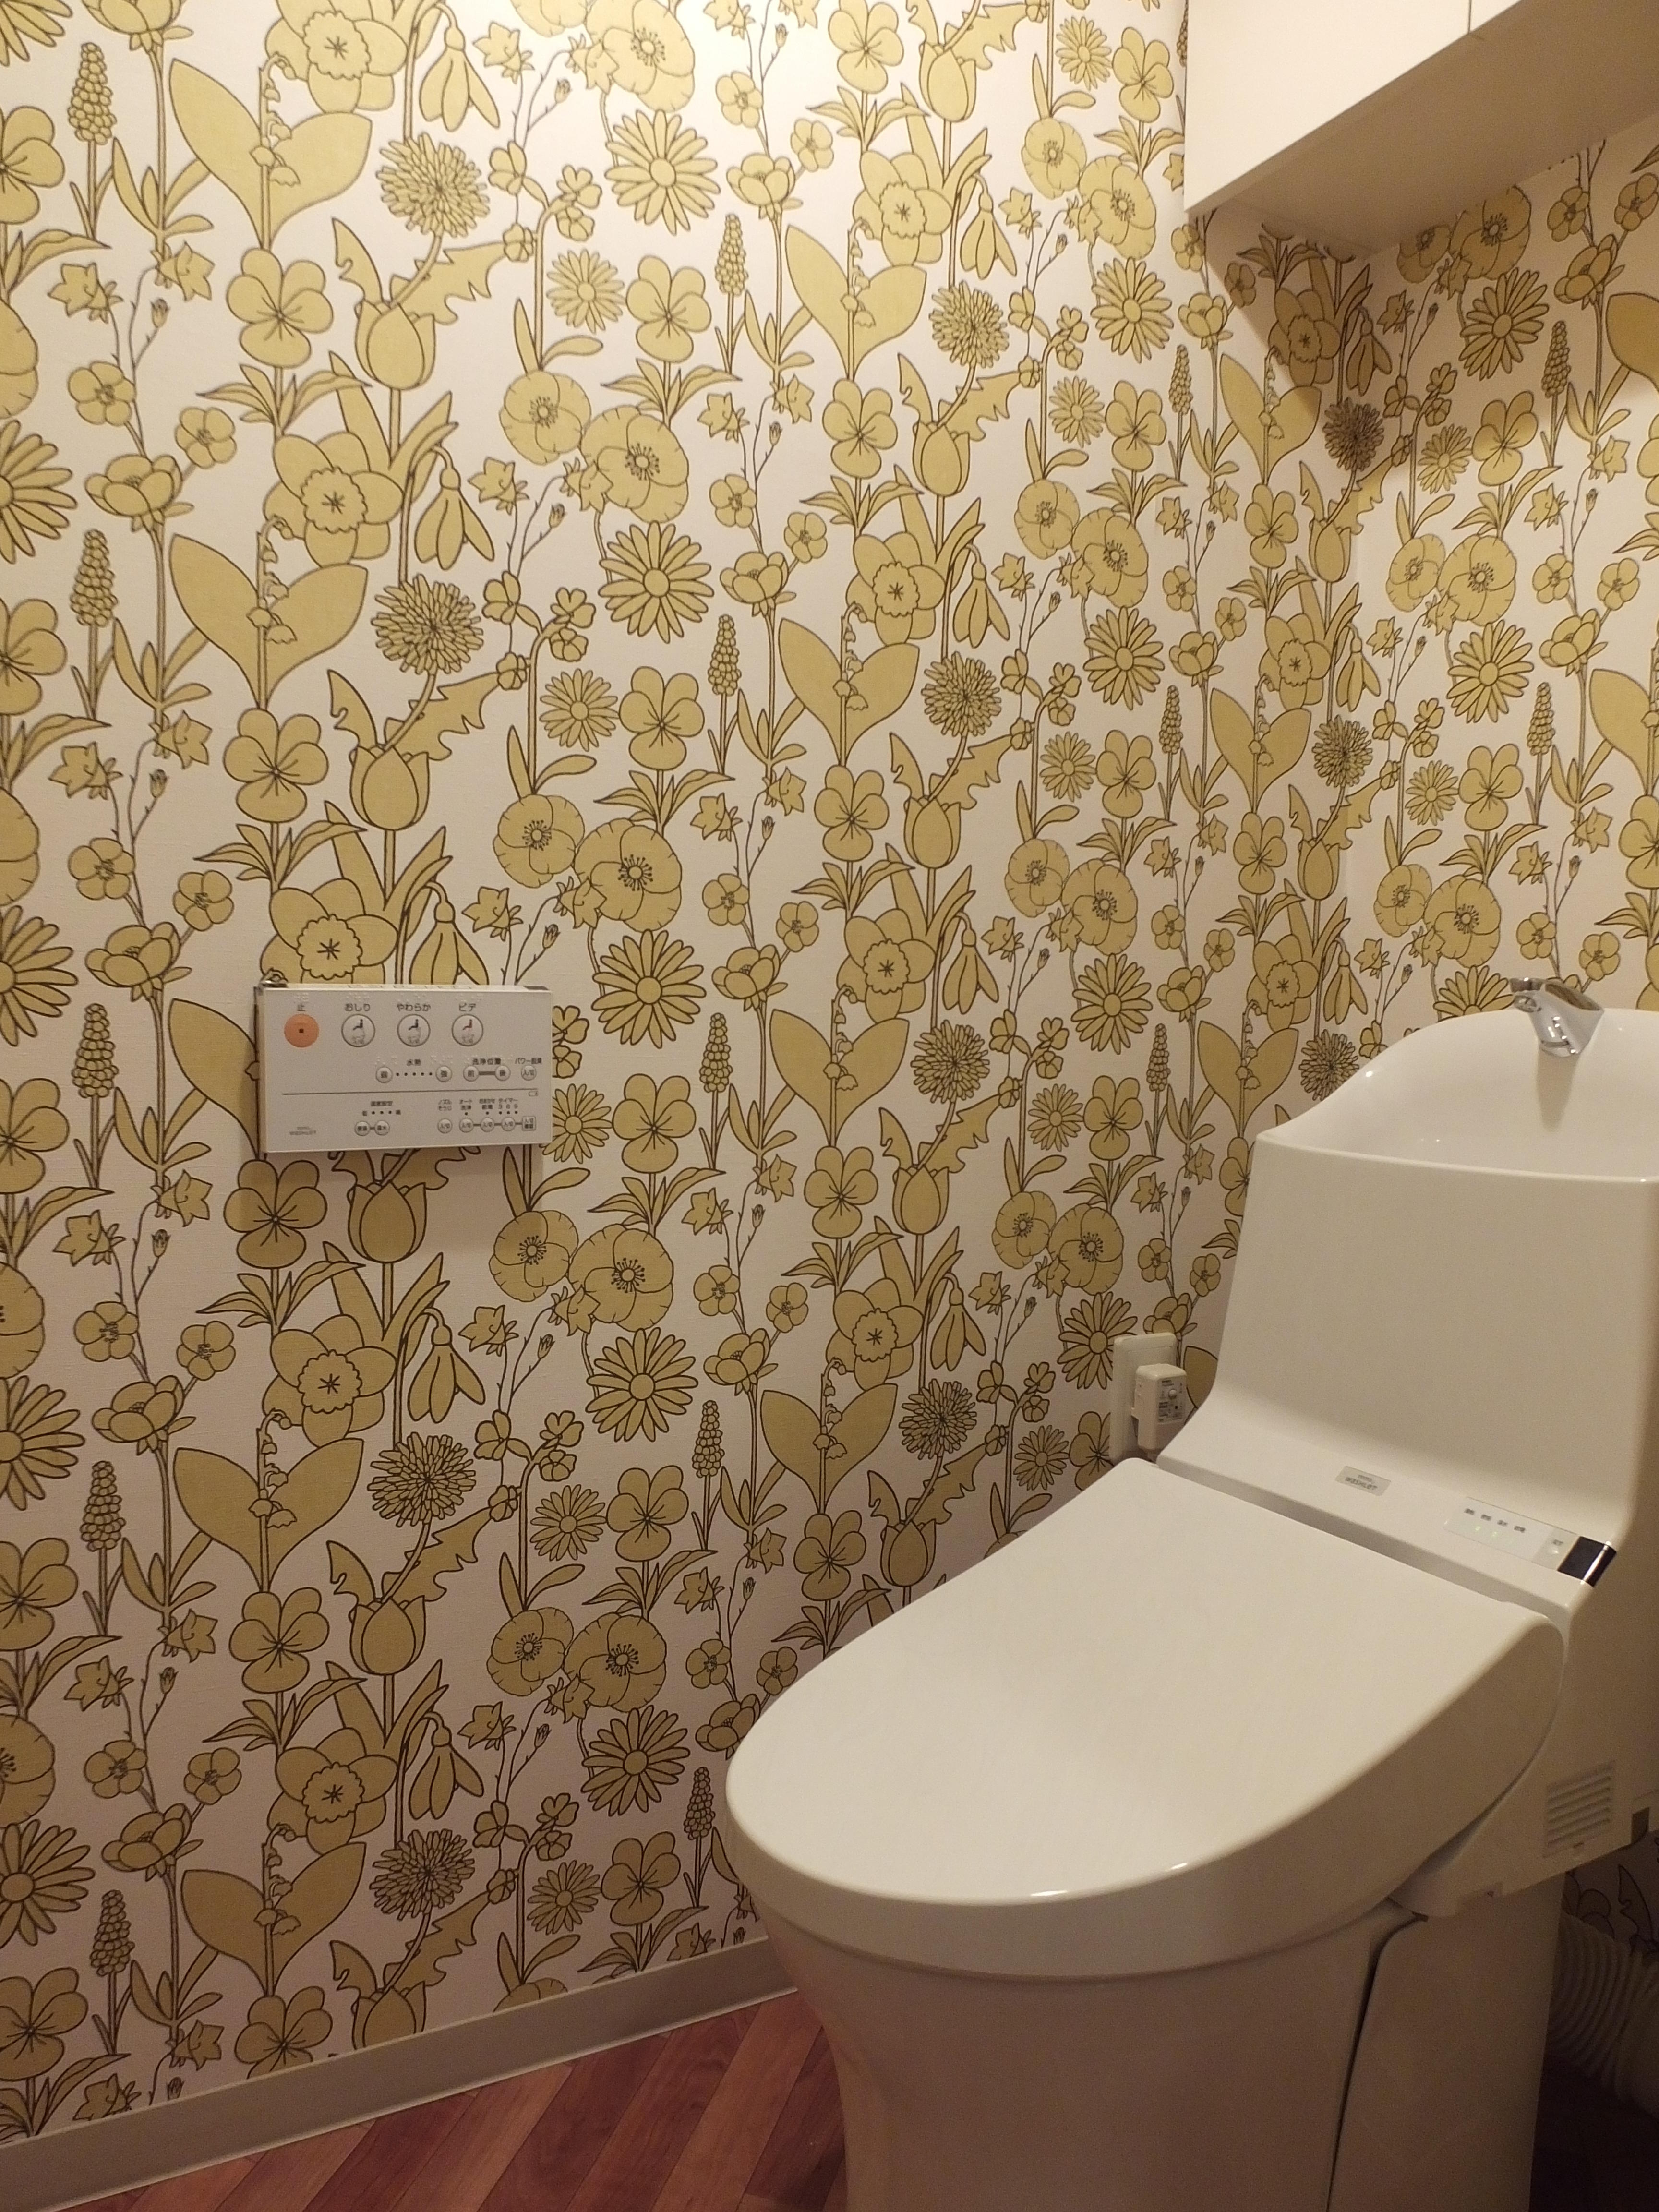 壁紙に拘った明るいトイレ 部位 部屋別事例一覧 リノベーション東京 理想の部屋